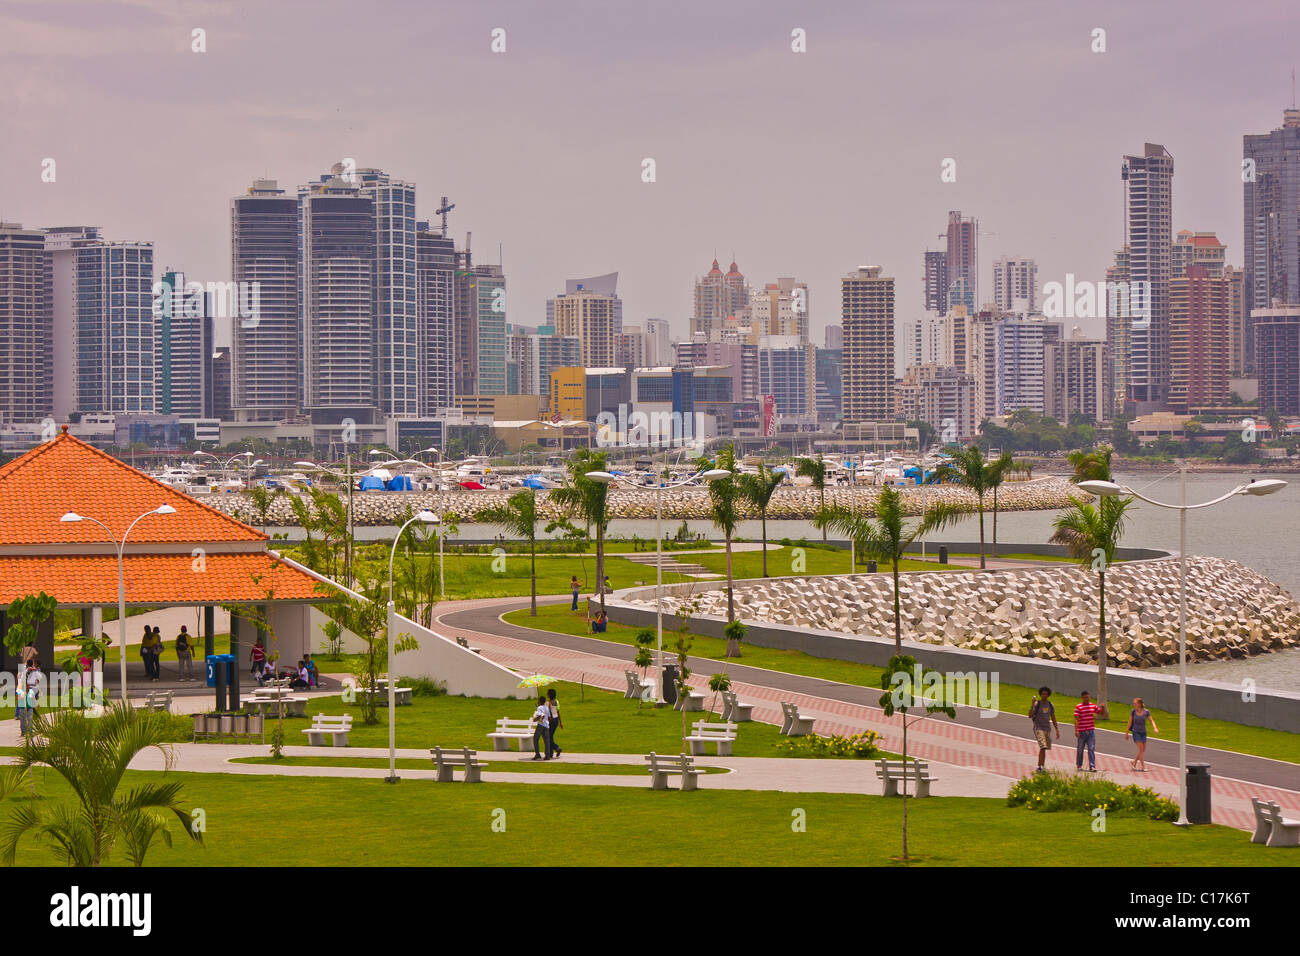 PANAMA CITY, PANAMA - passaggio pedonale nel parco urbano sulla Balboa Avenue sulla baia di Panama. Foto Stock